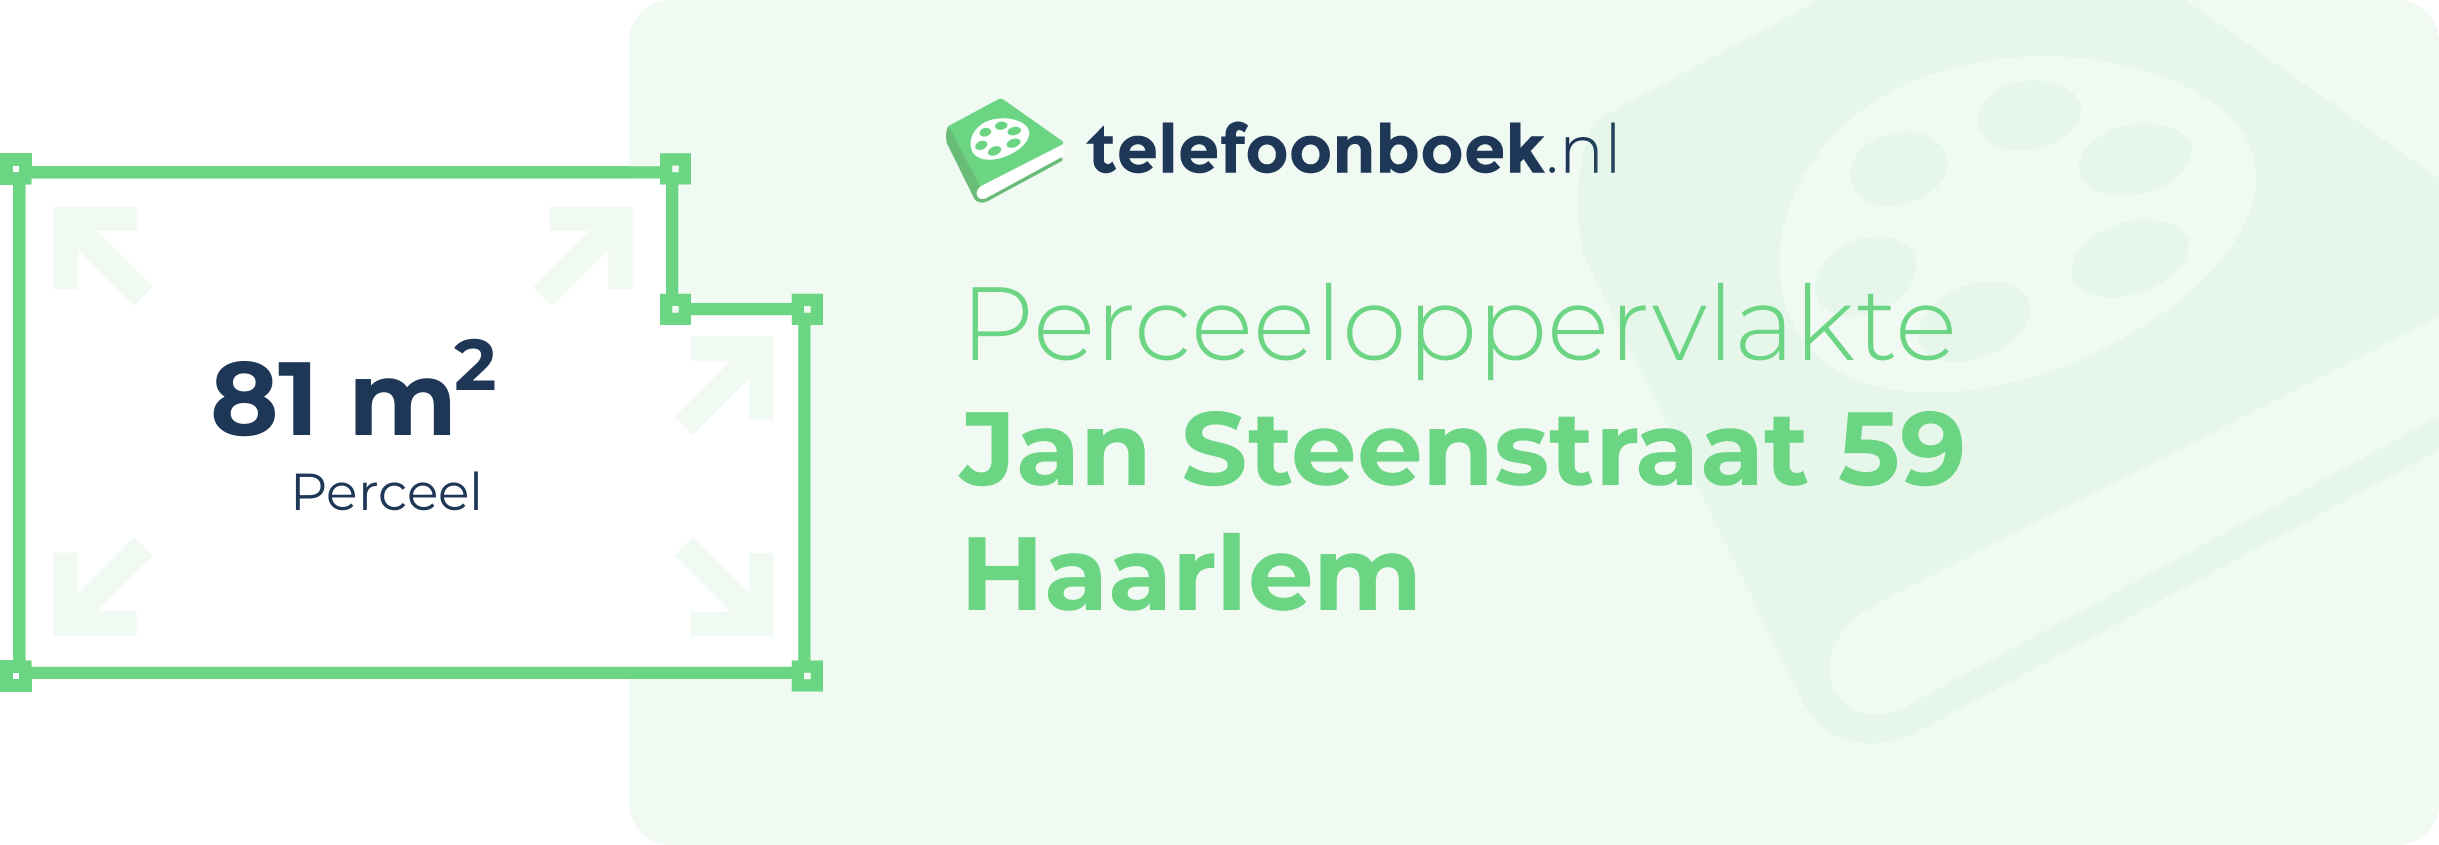 Perceeloppervlakte Jan Steenstraat 59 Haarlem